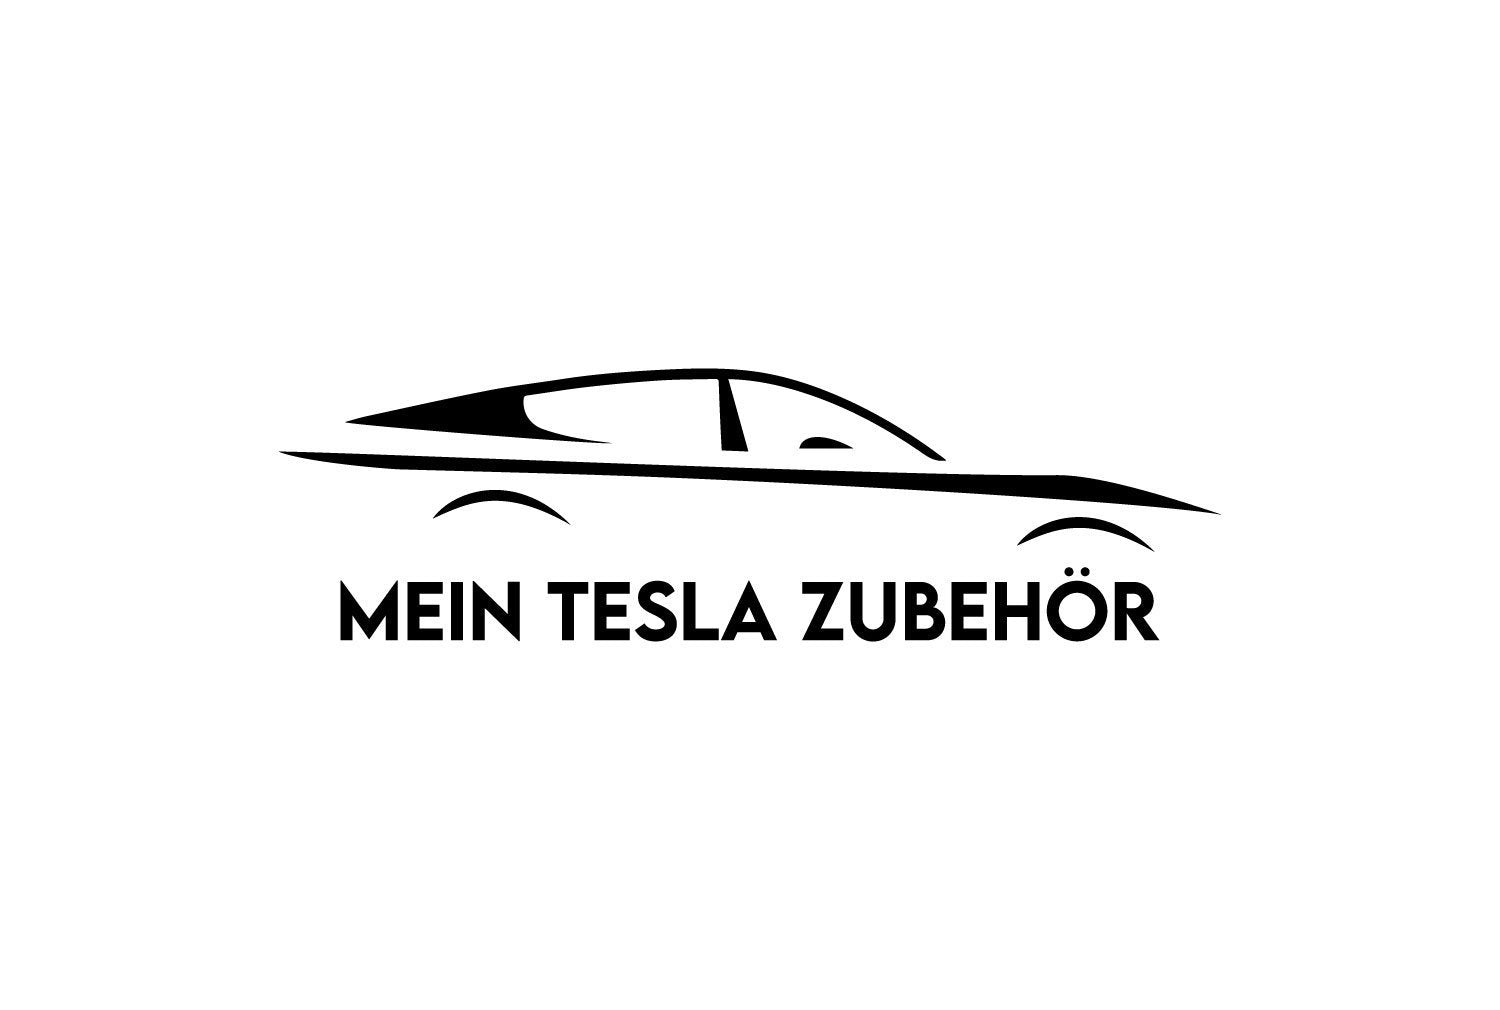 Tesla Zubehör   Webshop – Mein Tesla Zubehör